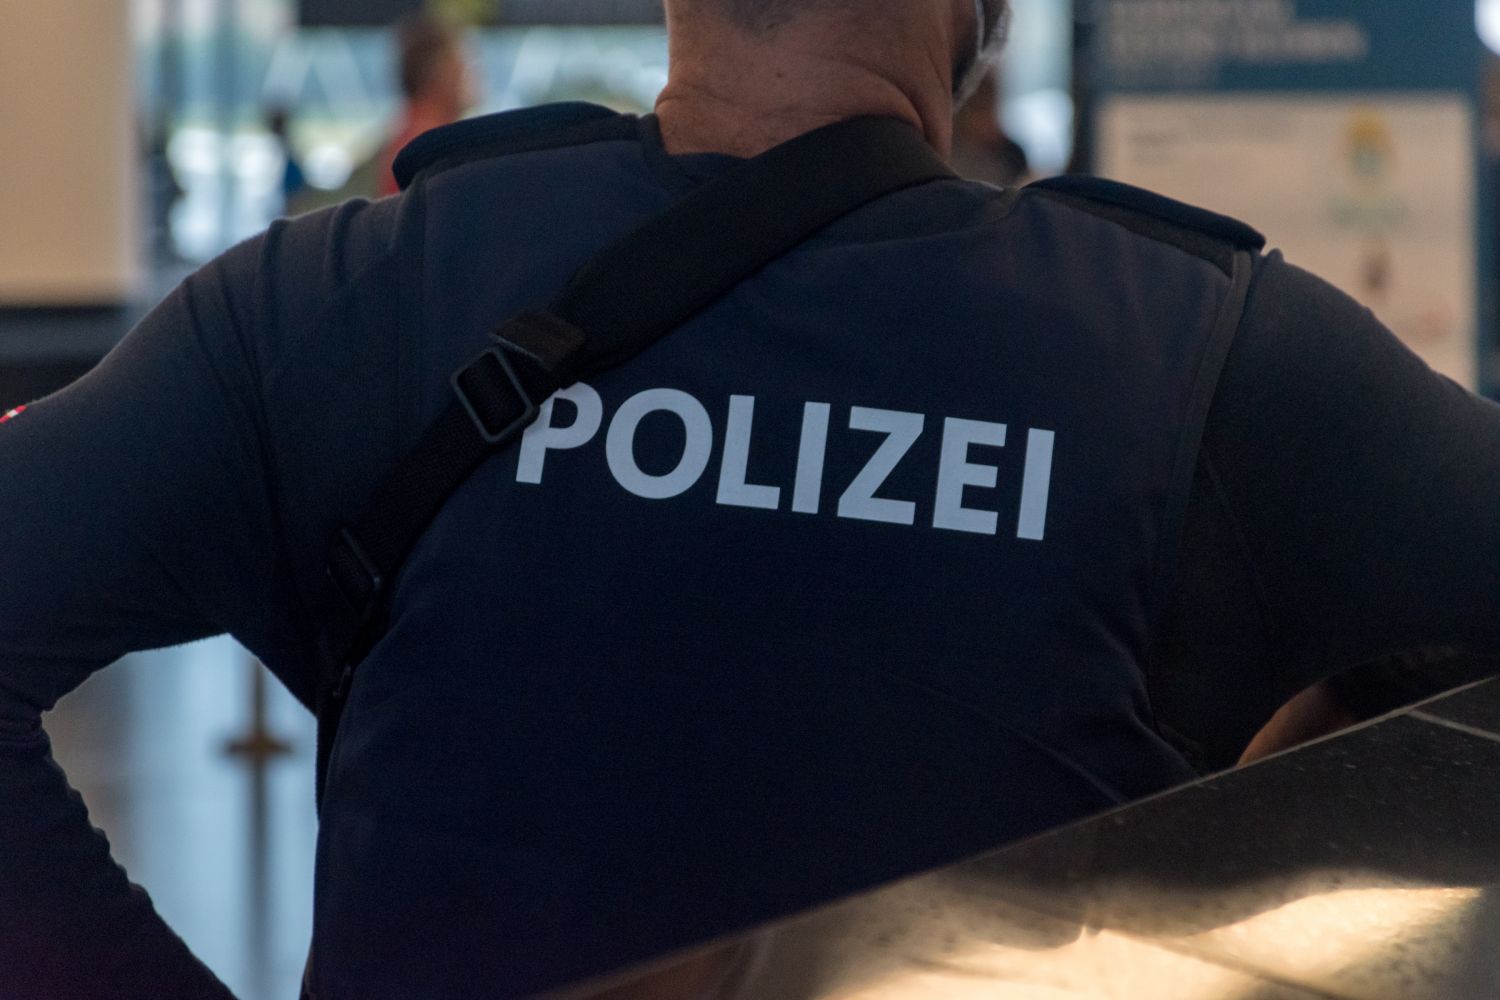 Policiers tués à Kusel : les dernières informations 